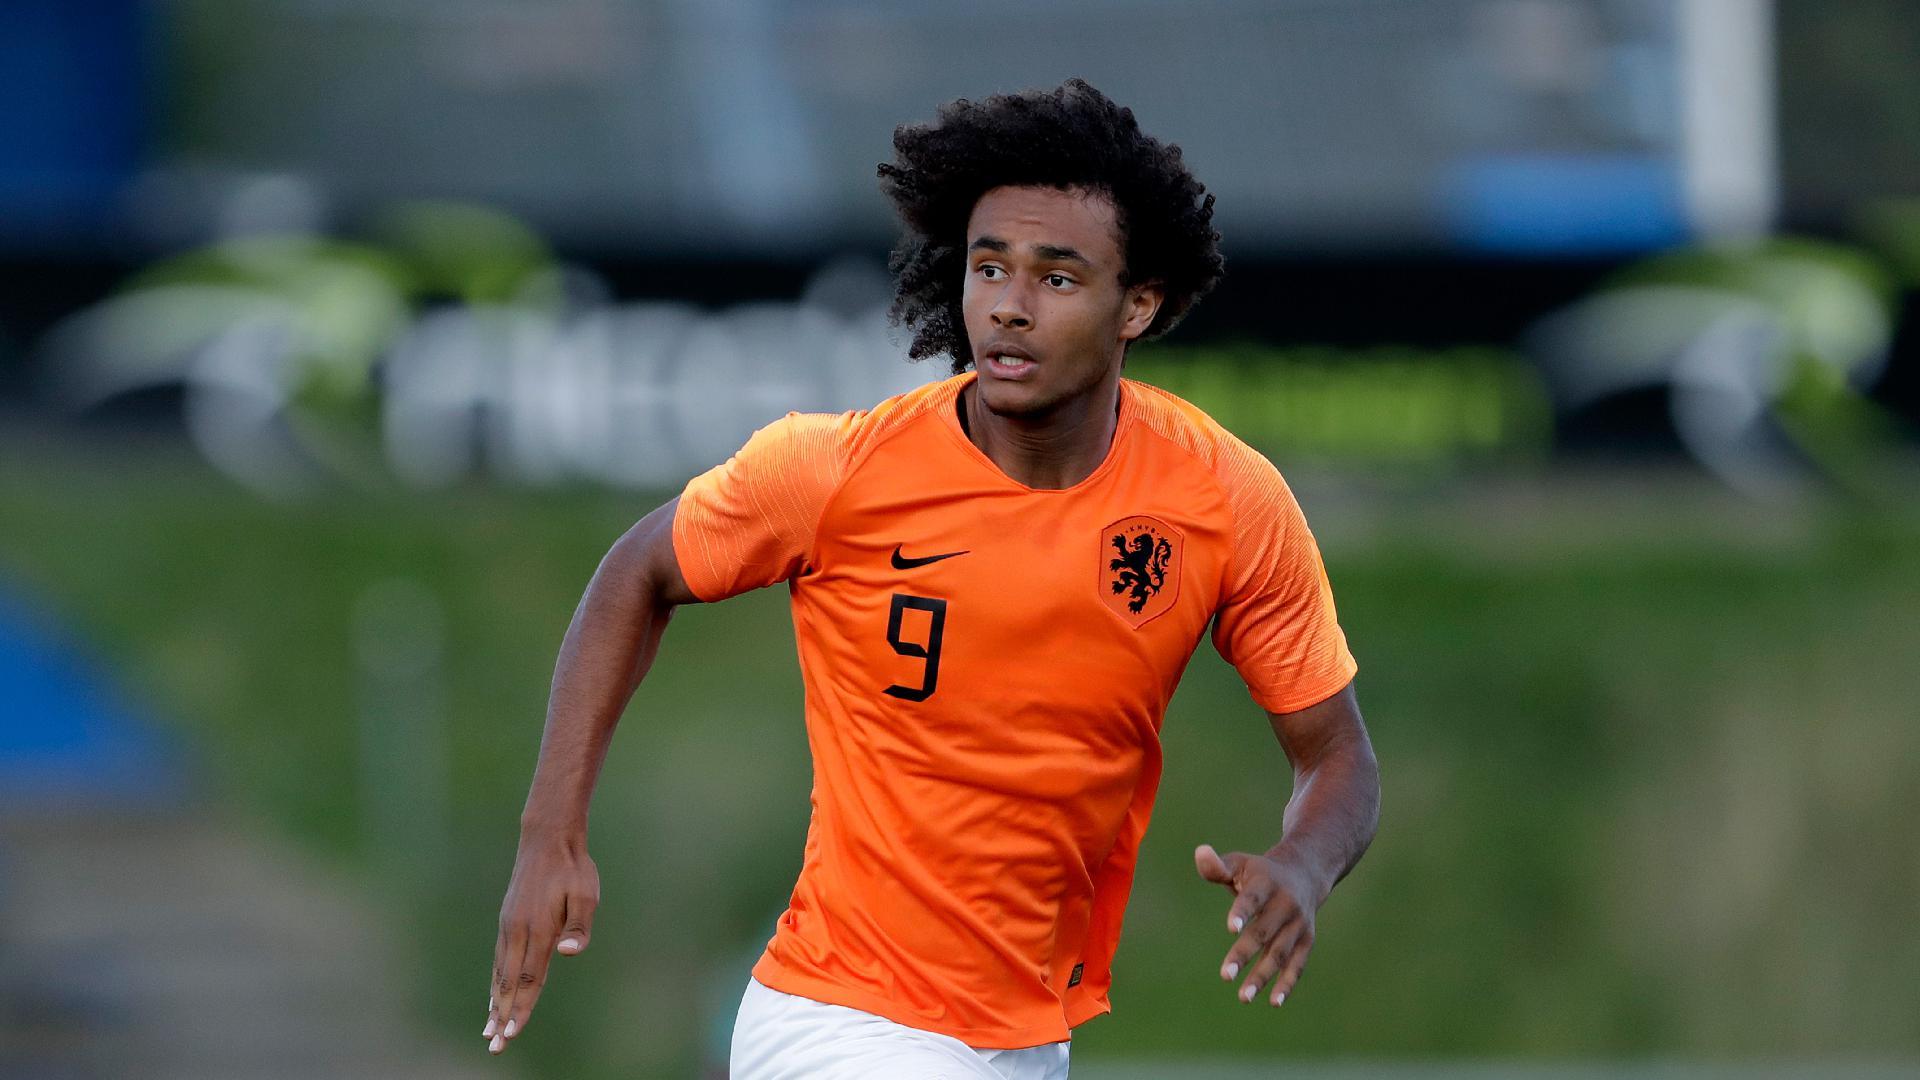 Oranje onder 19 start overtuigend aan EK-kwalificatie | OnsOranje